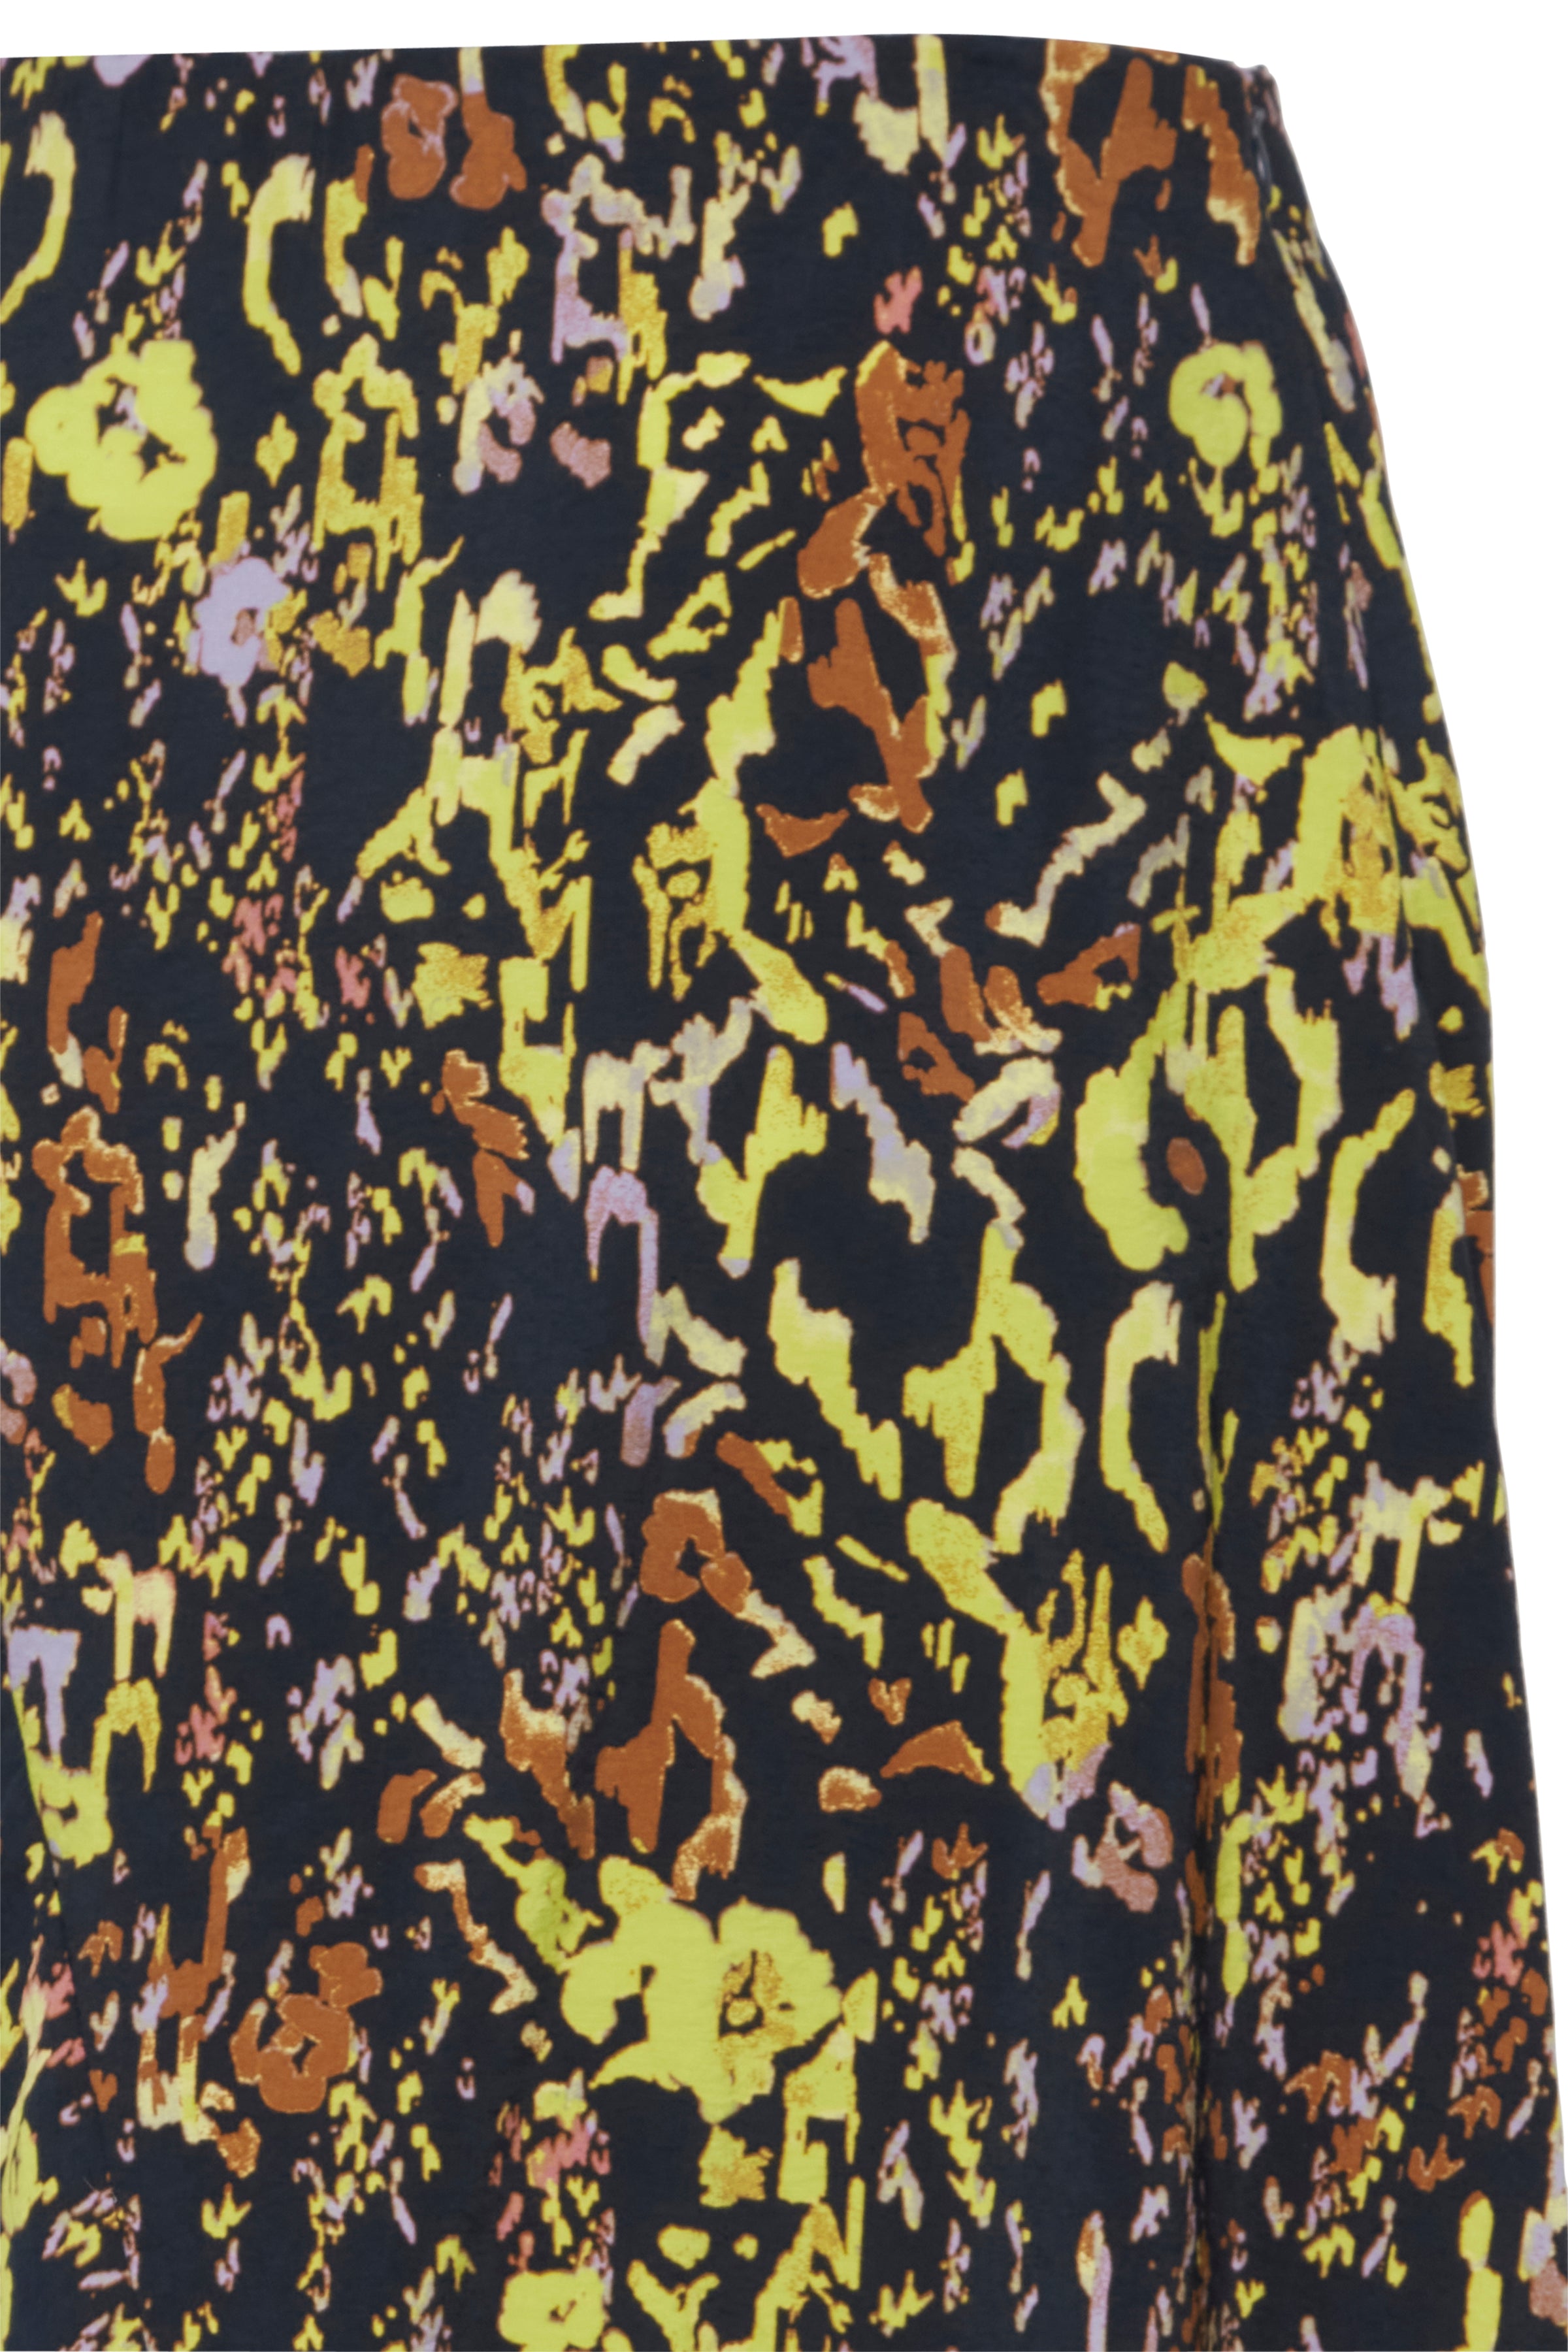 Ihazino midi multi coloured skirt | Ichi